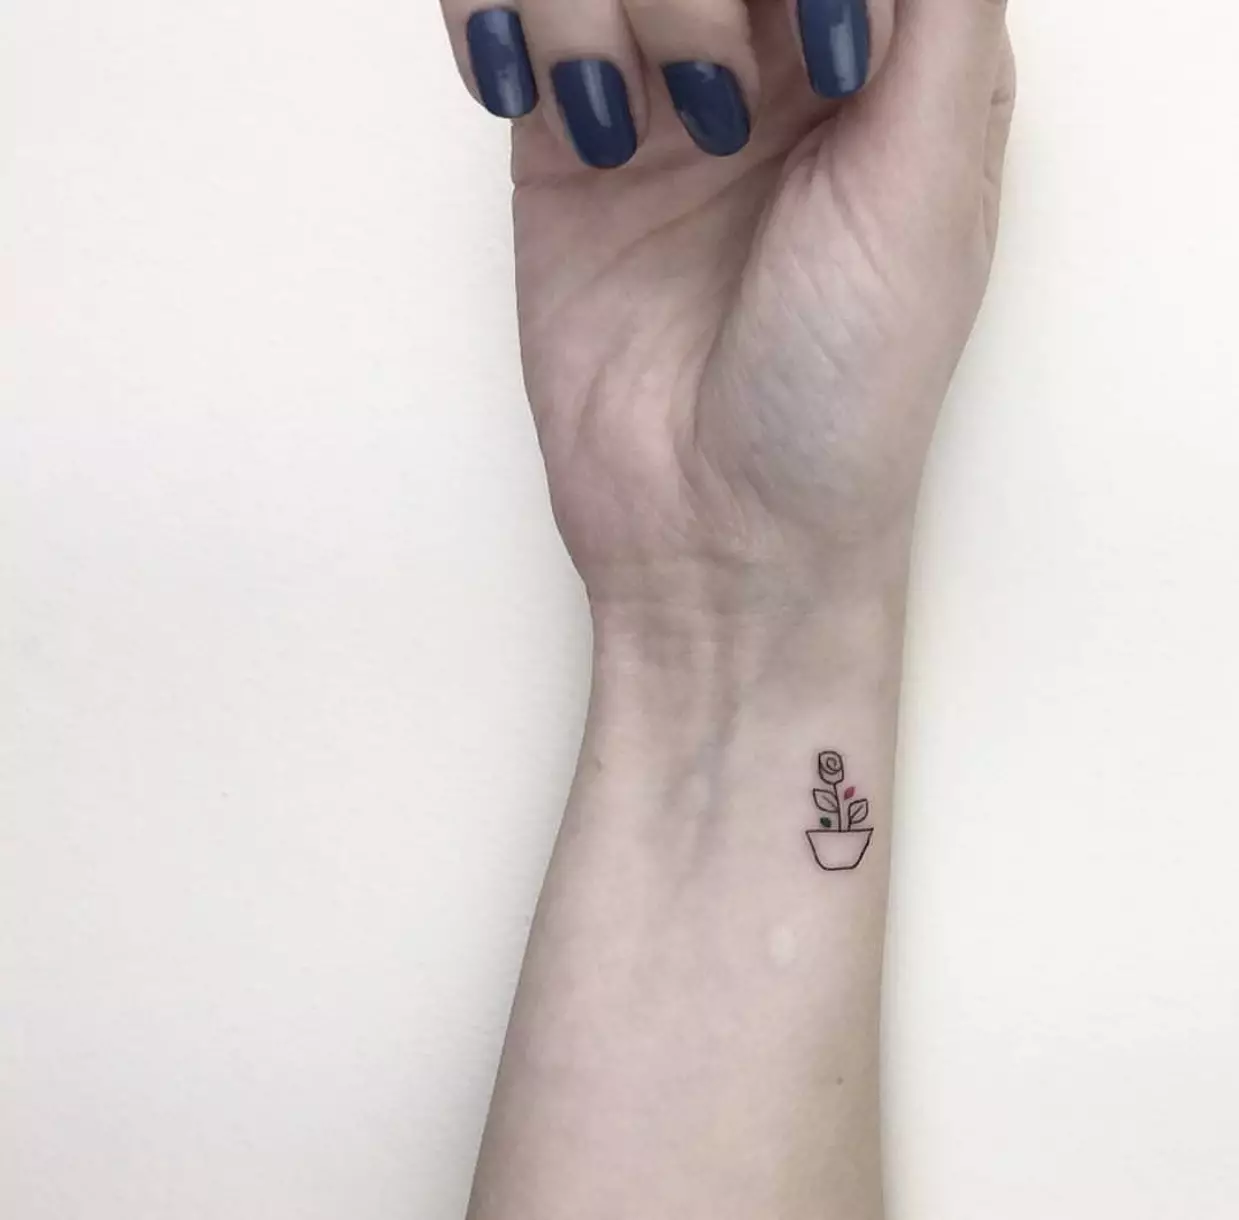 Tatuiruotė mergaitėms ant riešo (80 nuotraukų): mažai tatuiruotės su prasme ir kitais, eskizais ir reikšmėmis, gražiomis tatuiruotėmis aplink riešą ir šoną 13834_49